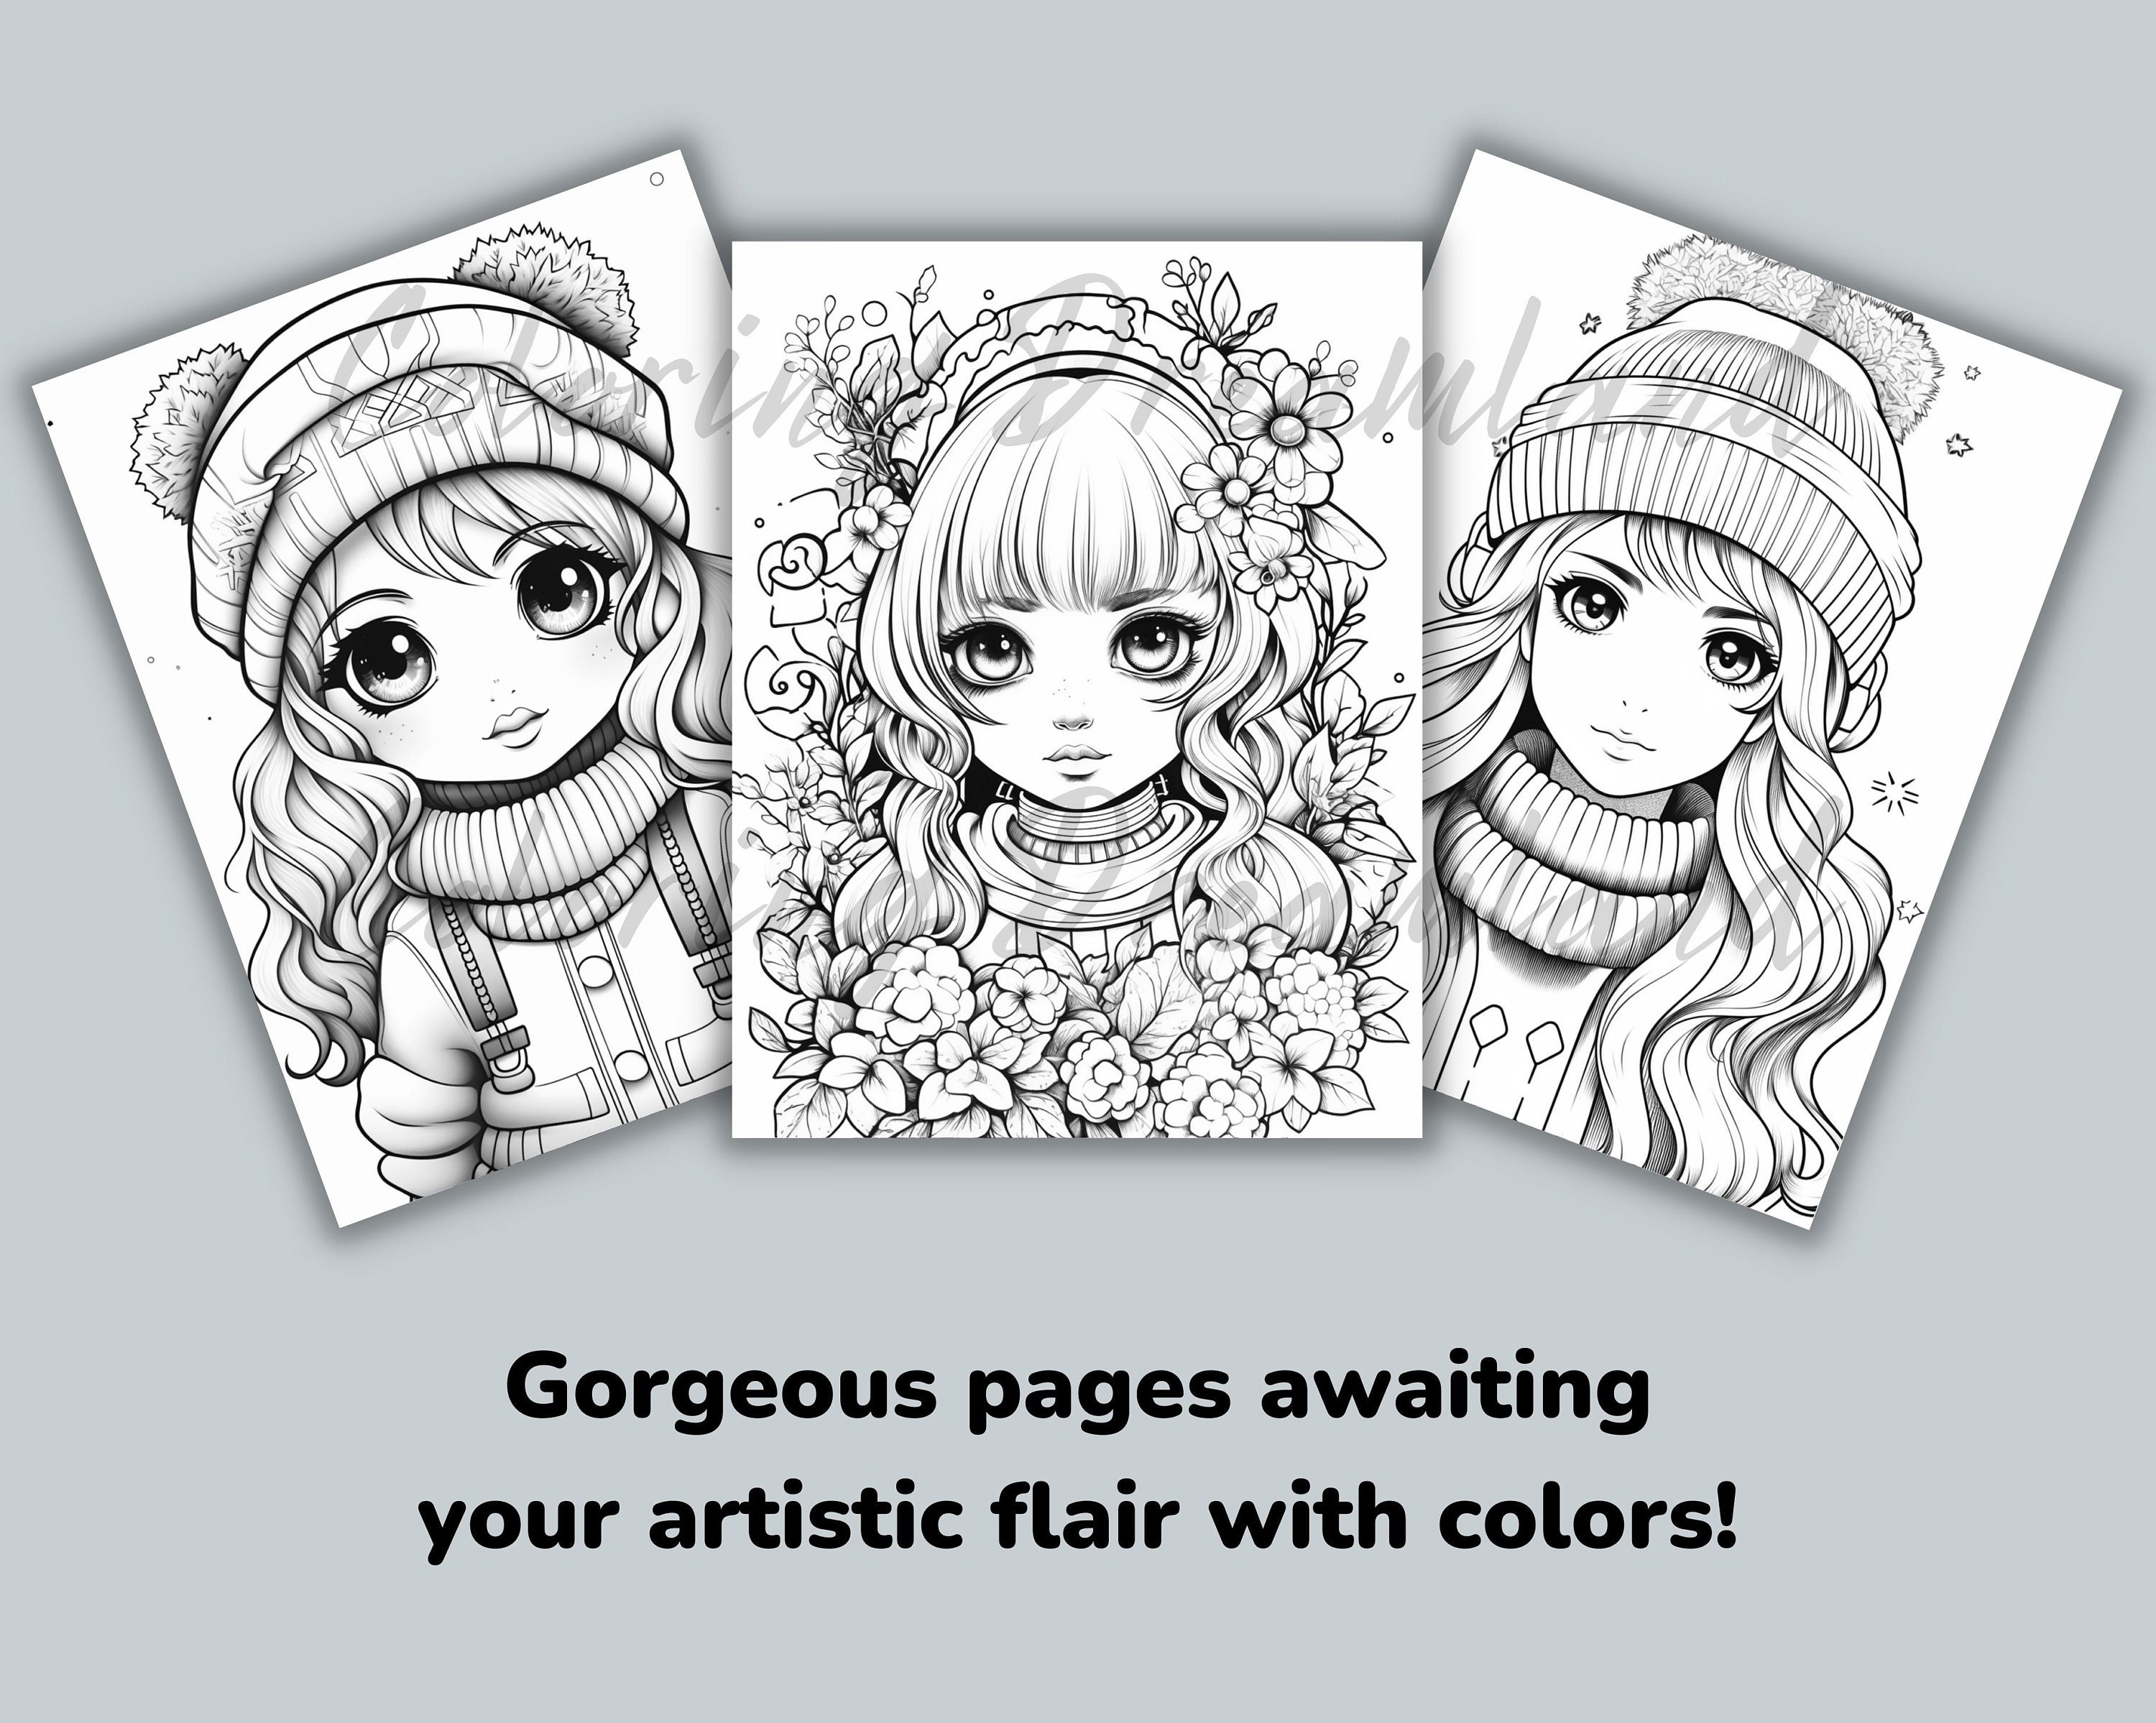 Kawaii Colorful: Anime Girls Coloring Pages: SET 1 by Wanida Baokantee